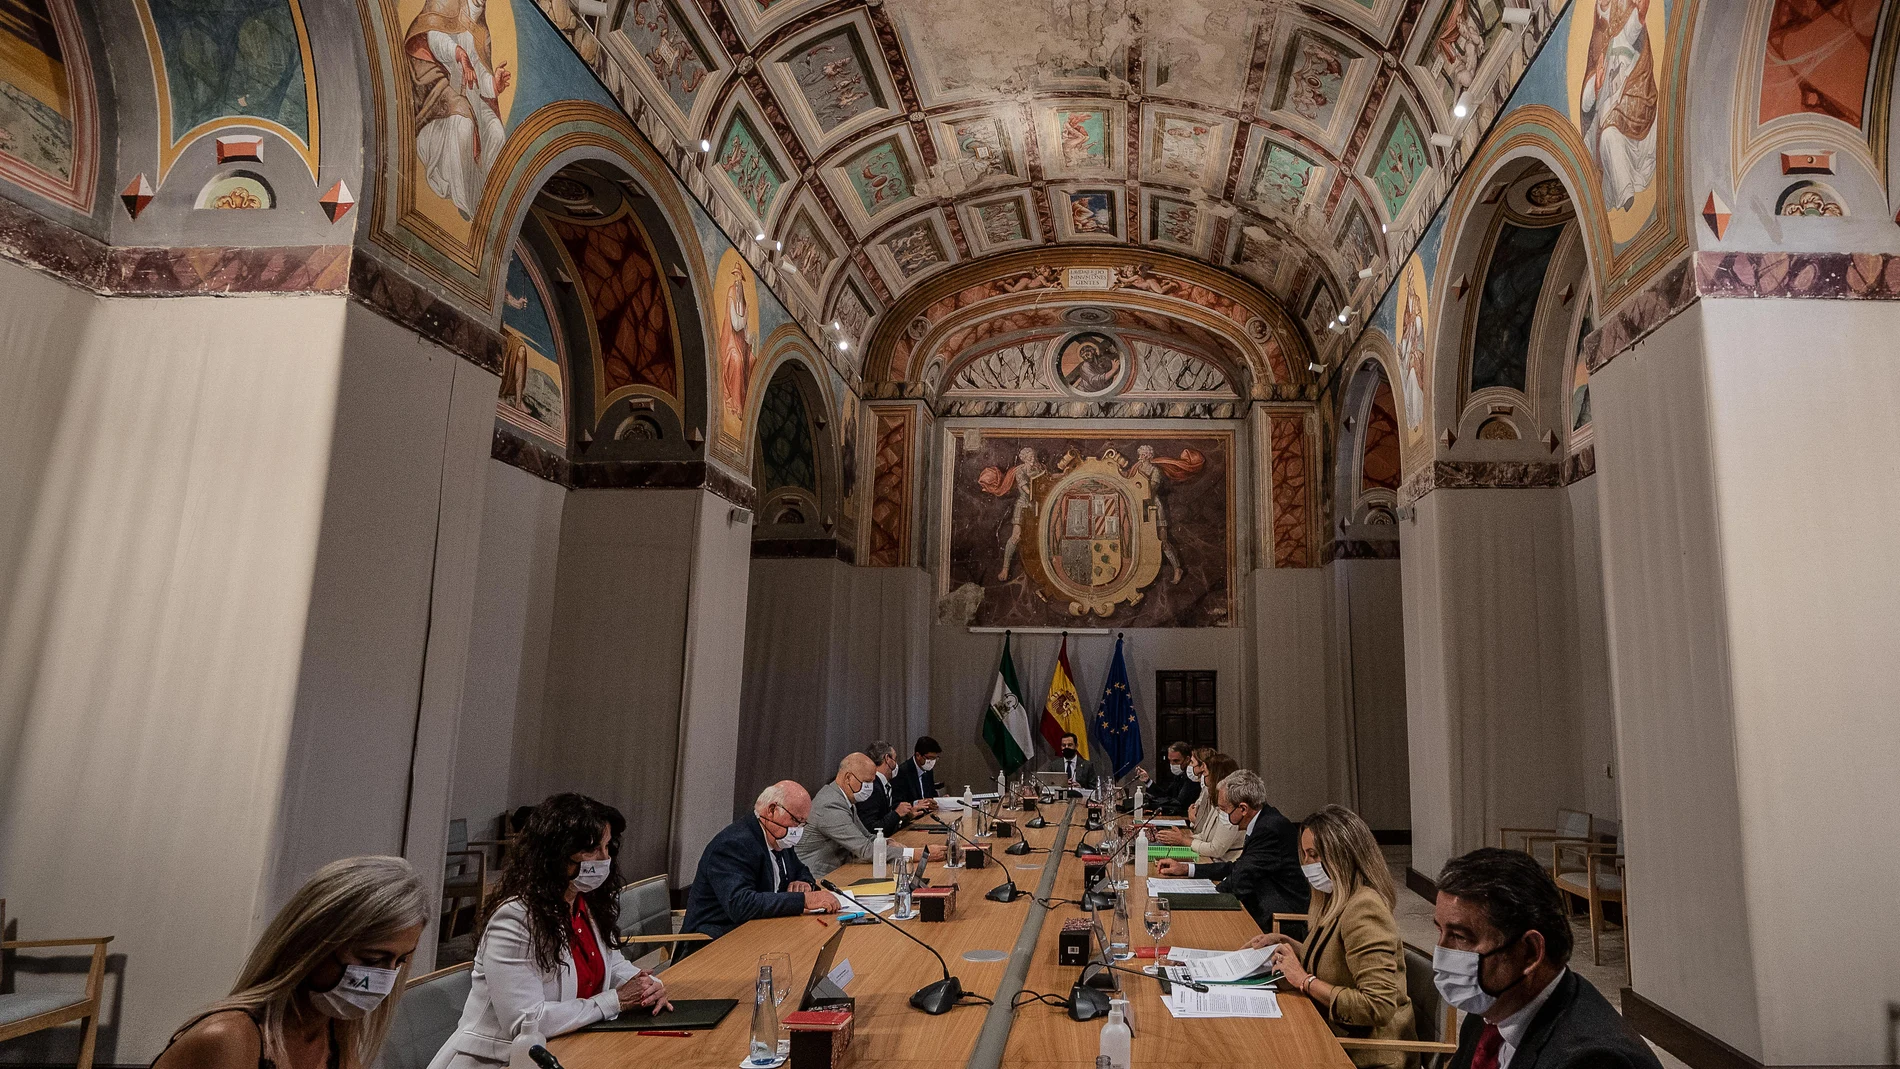 El presidente de la Junta de Andalucía, Juanma Moreno, ha presidido la reunión del Consejo de Gobierno de la Junta de Andalucía celebrado en la ciudad de Úbeda, Jaén